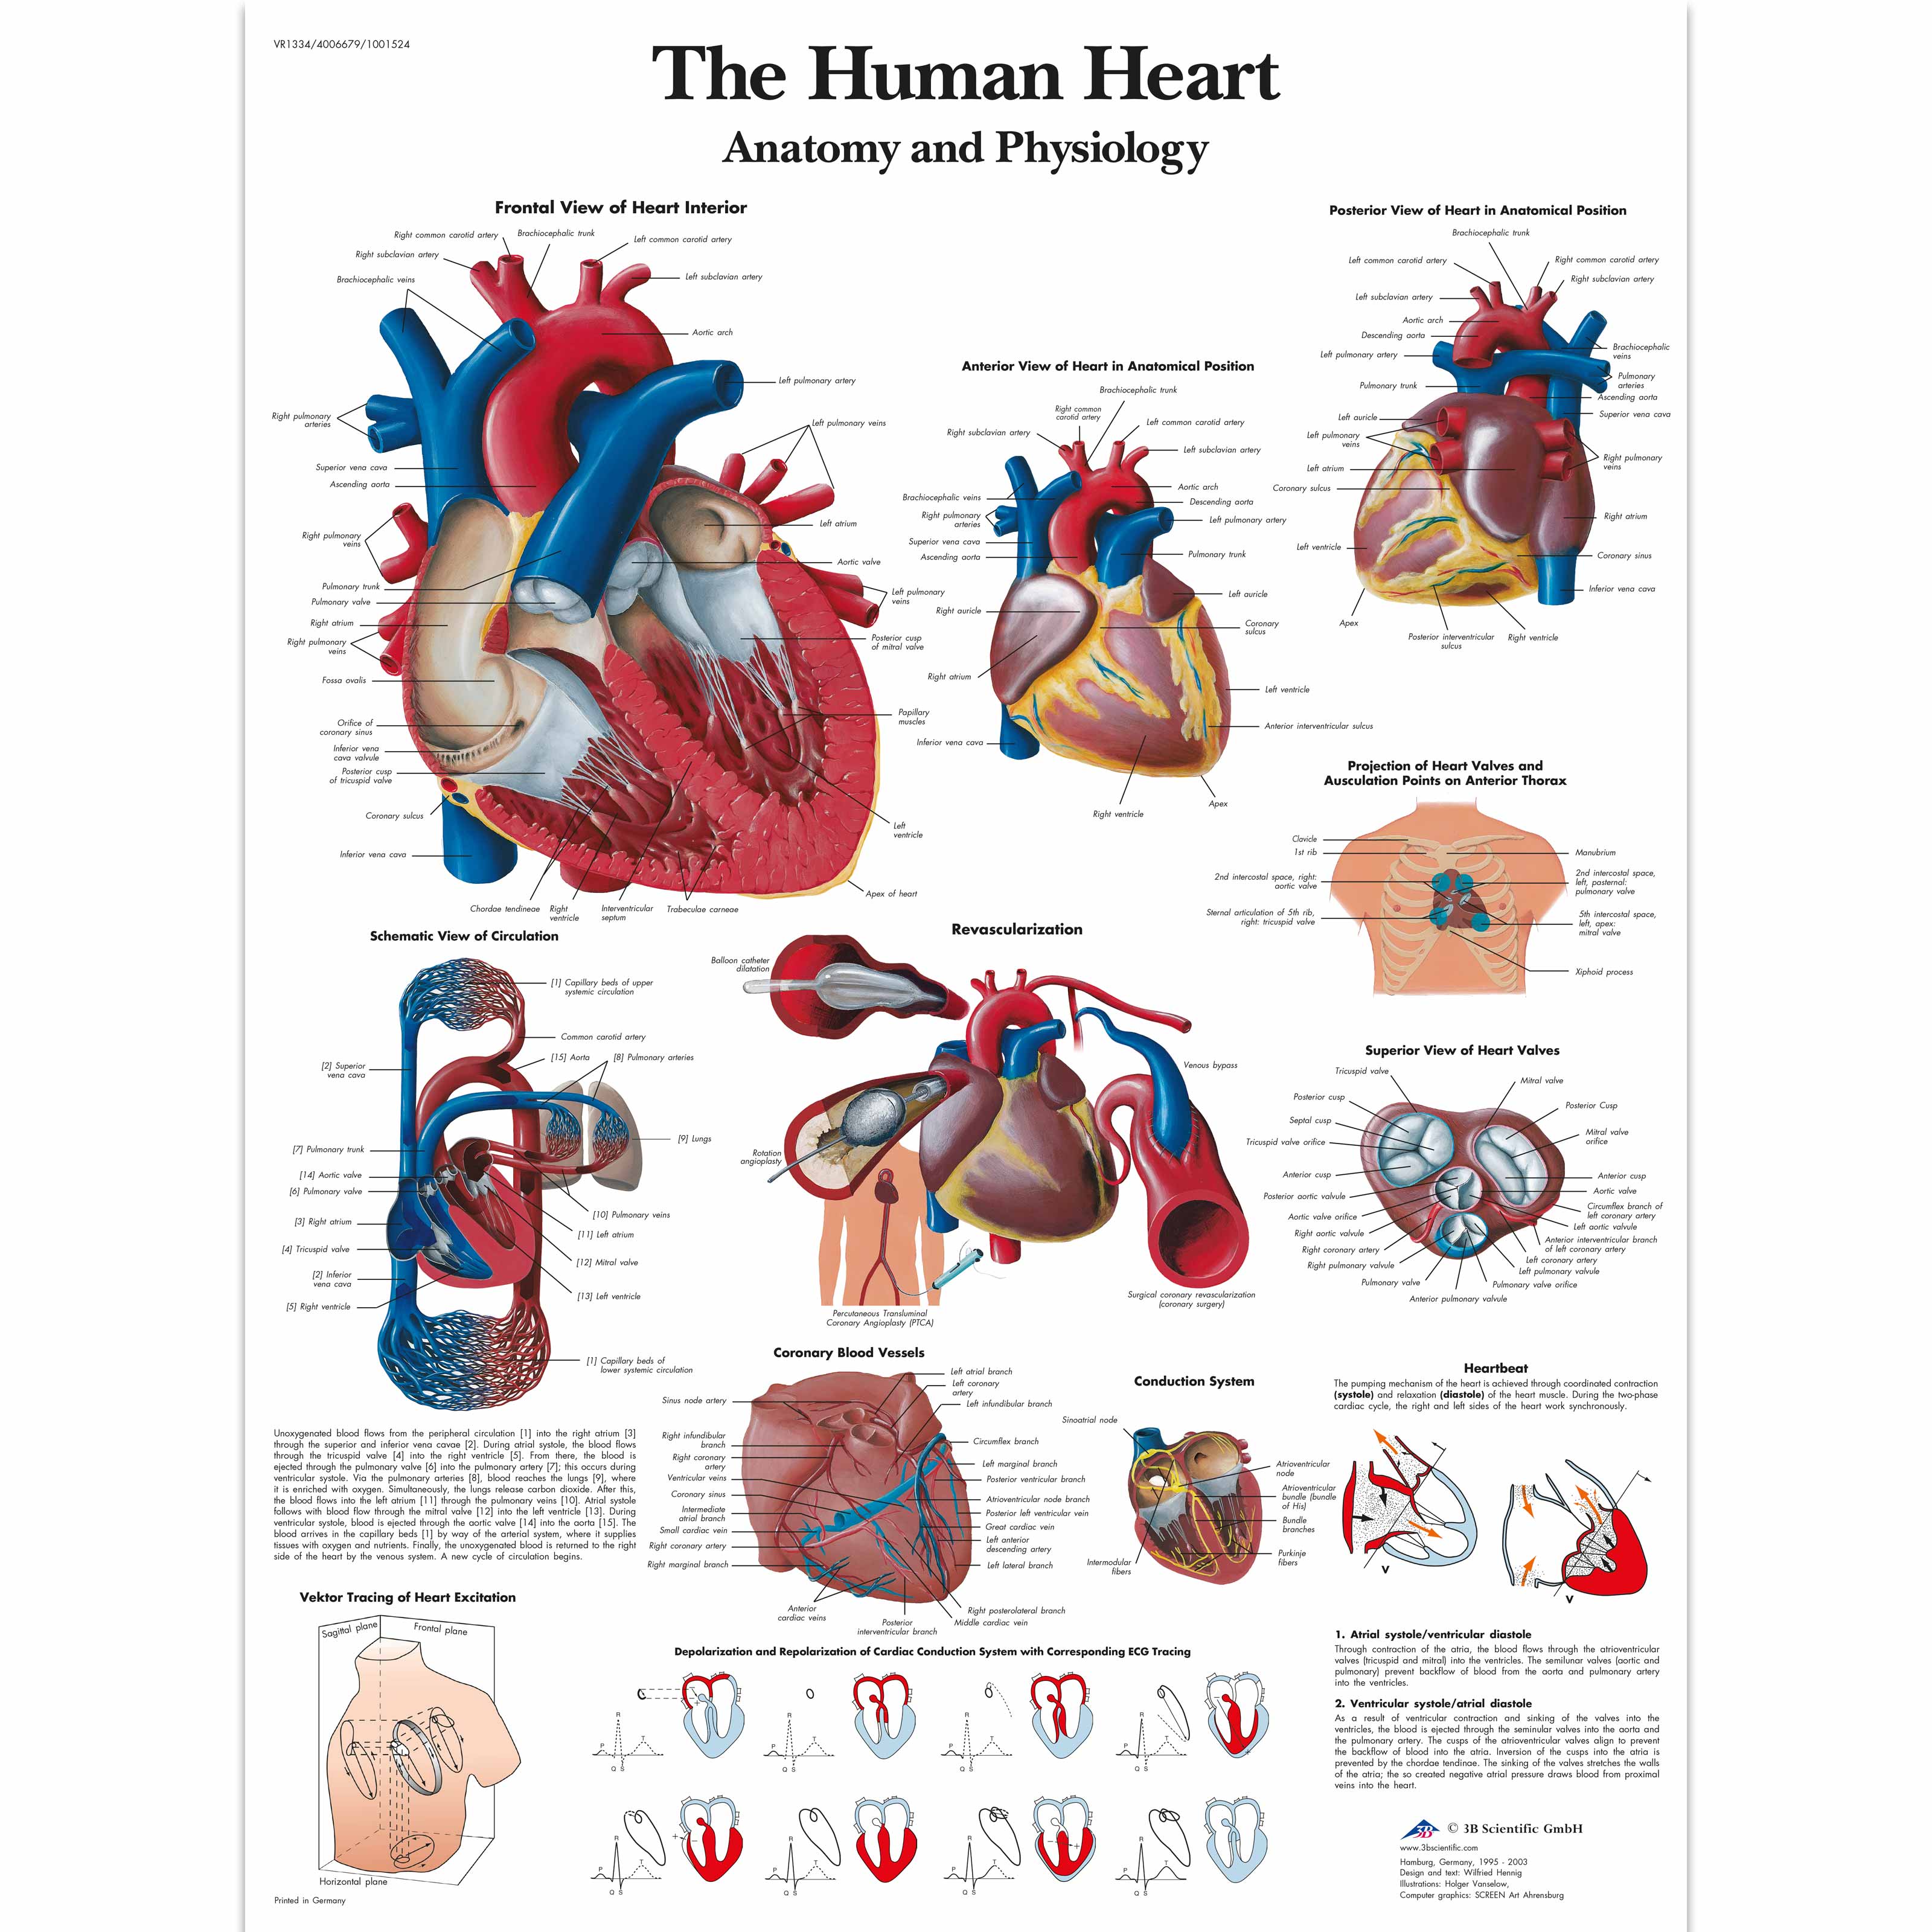 Fisiologia e anatomia do coração